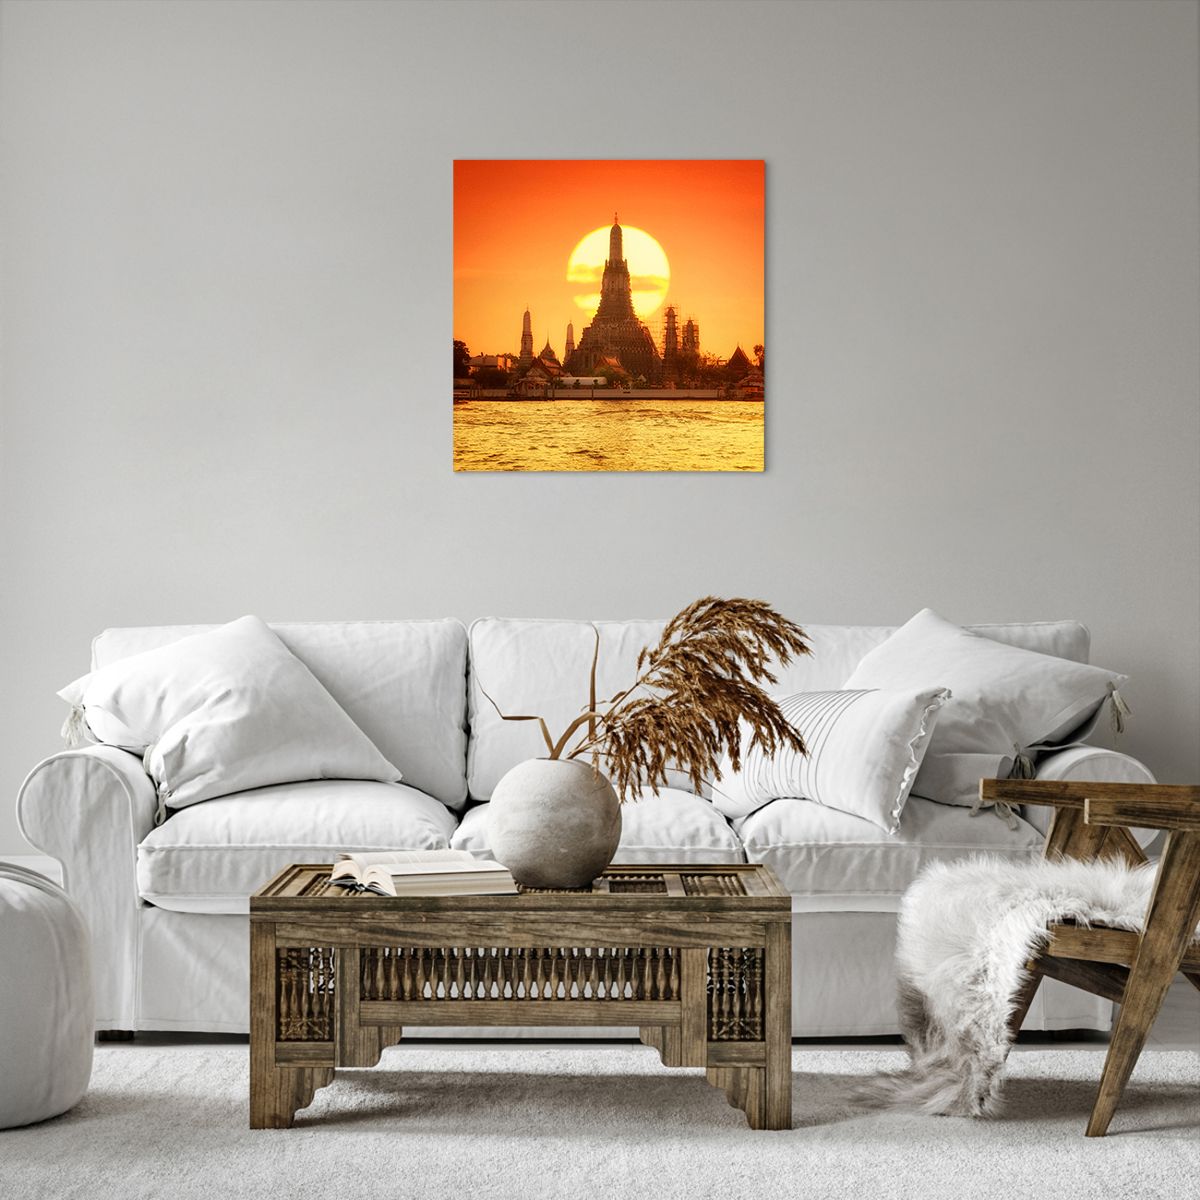 Bild auf Leinwand Bangkok, Bild auf Leinwand Tempel Der Morgenröte, Bild auf Leinwand Thailand, Bild auf Leinwand Sonne, Bild auf Leinwand Buddhismus